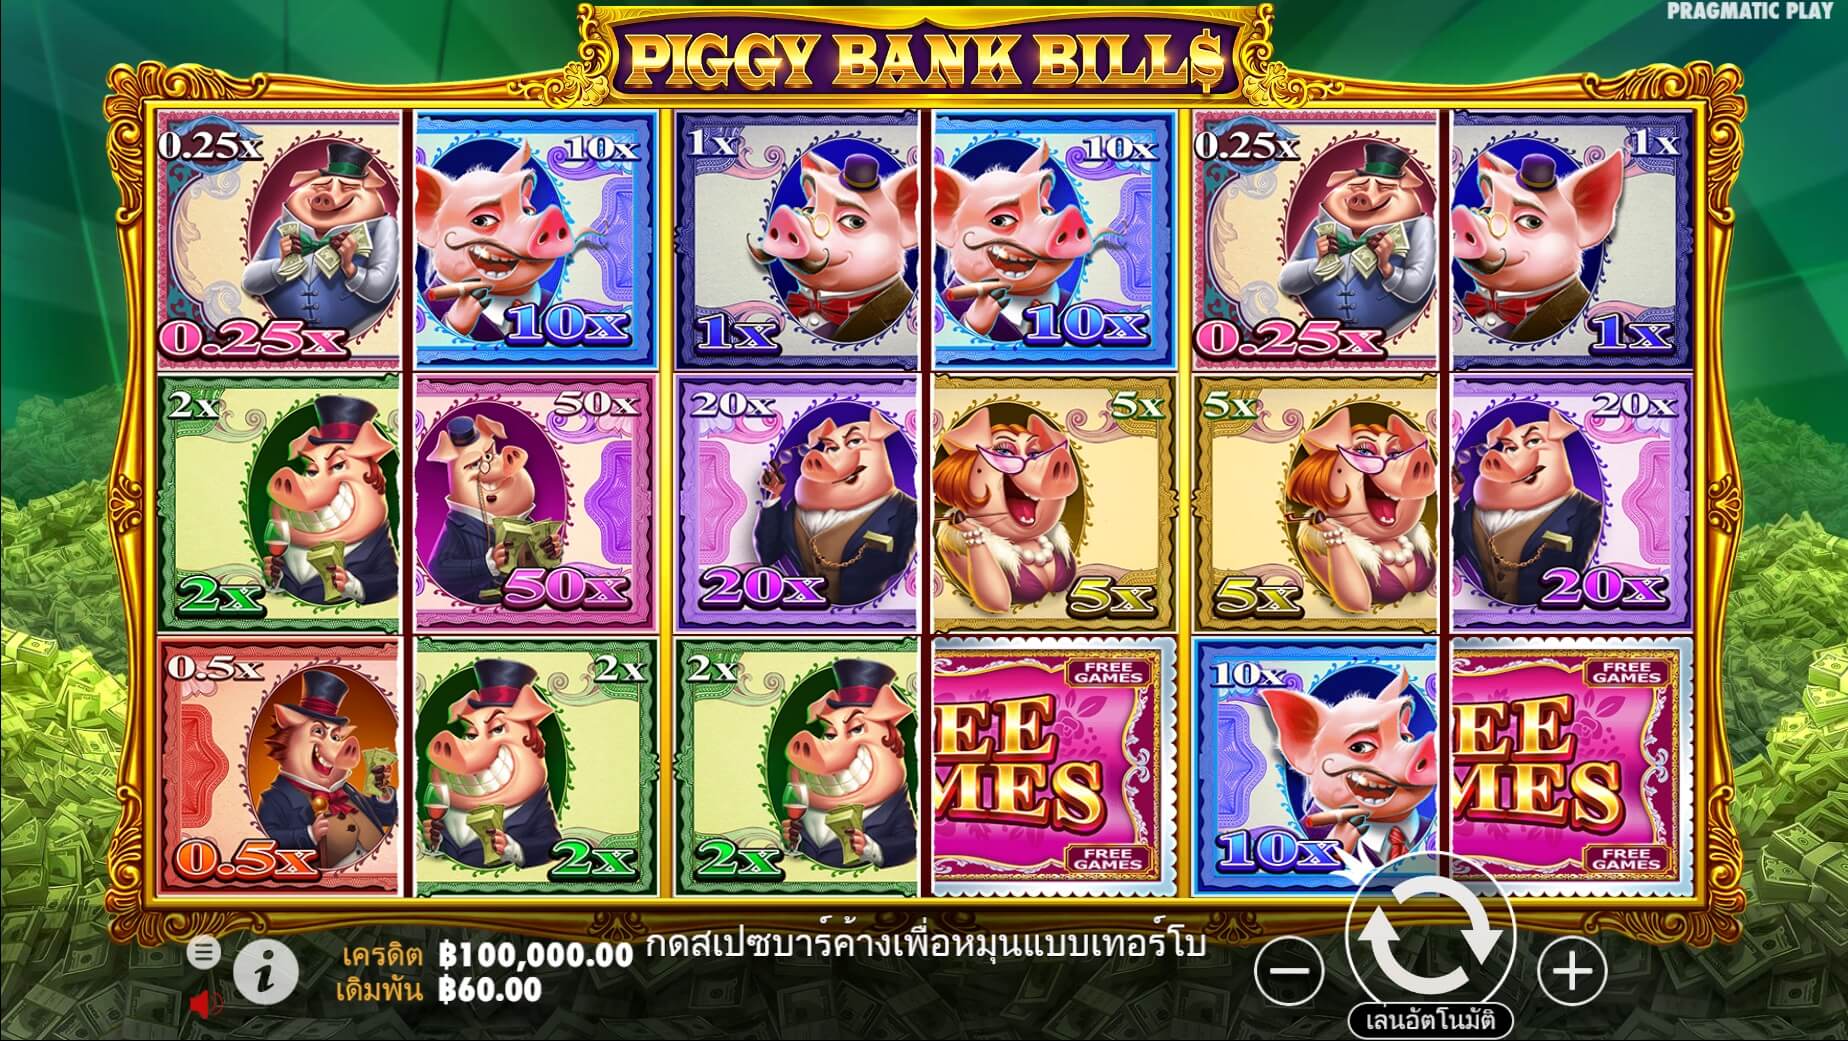 pragmatic play ฟรีเครดิต Piggy Bank Bills Superslot เครดิตฟรี 300